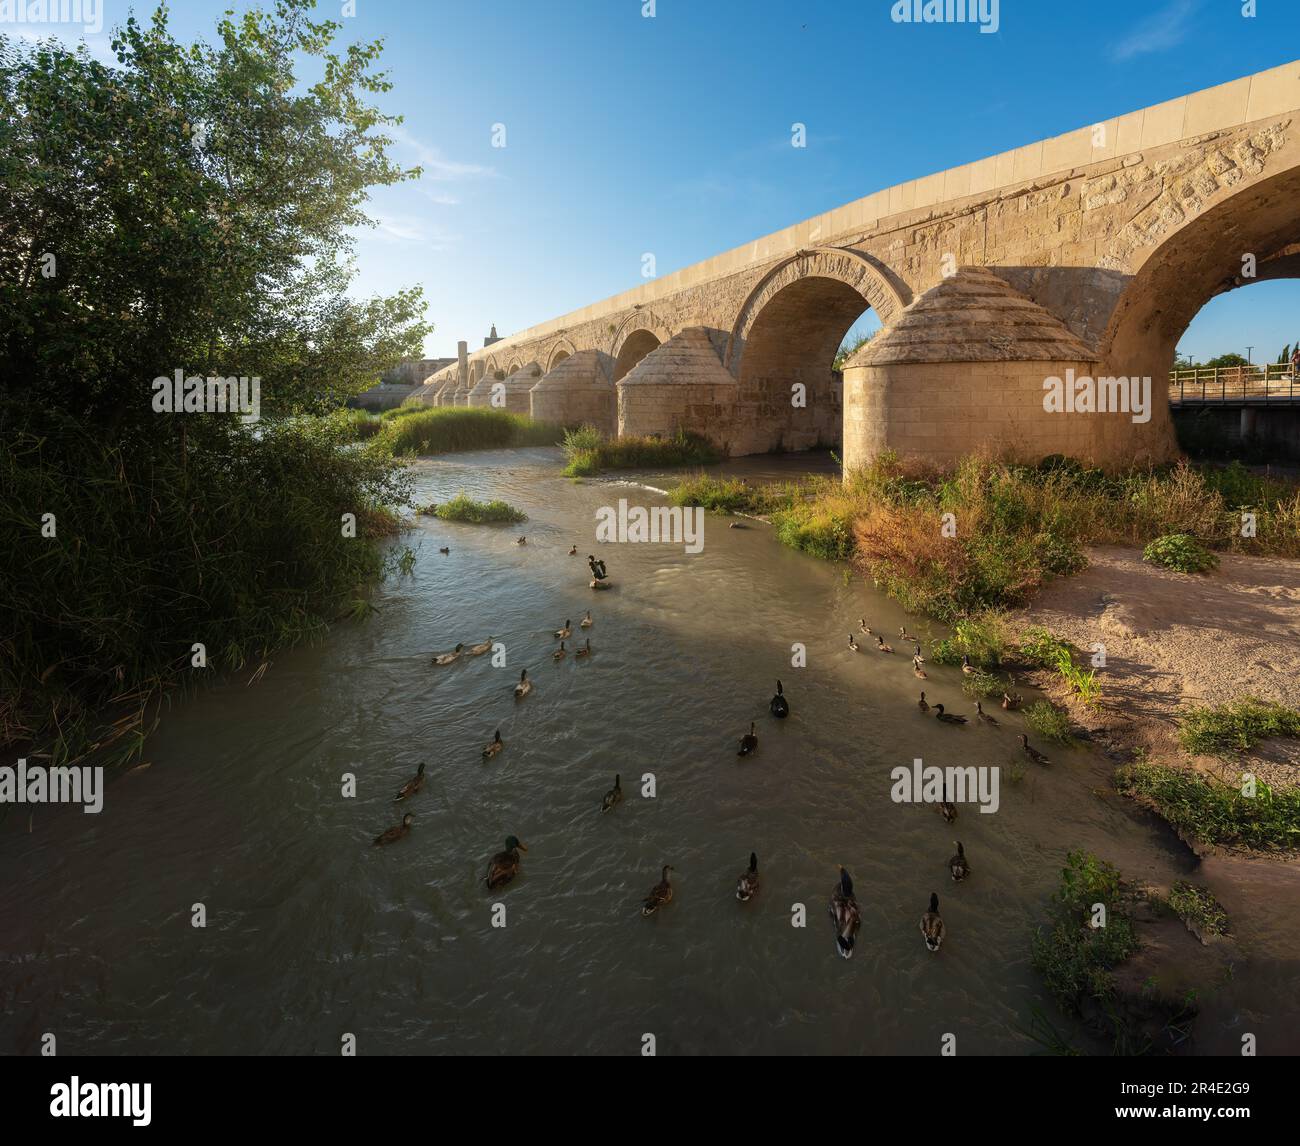 Gruppe von Enten am Fluss Guadalquivir in der Nähe der römischen Brücke - Cordoba, Andalusien, Spanien Stockfoto